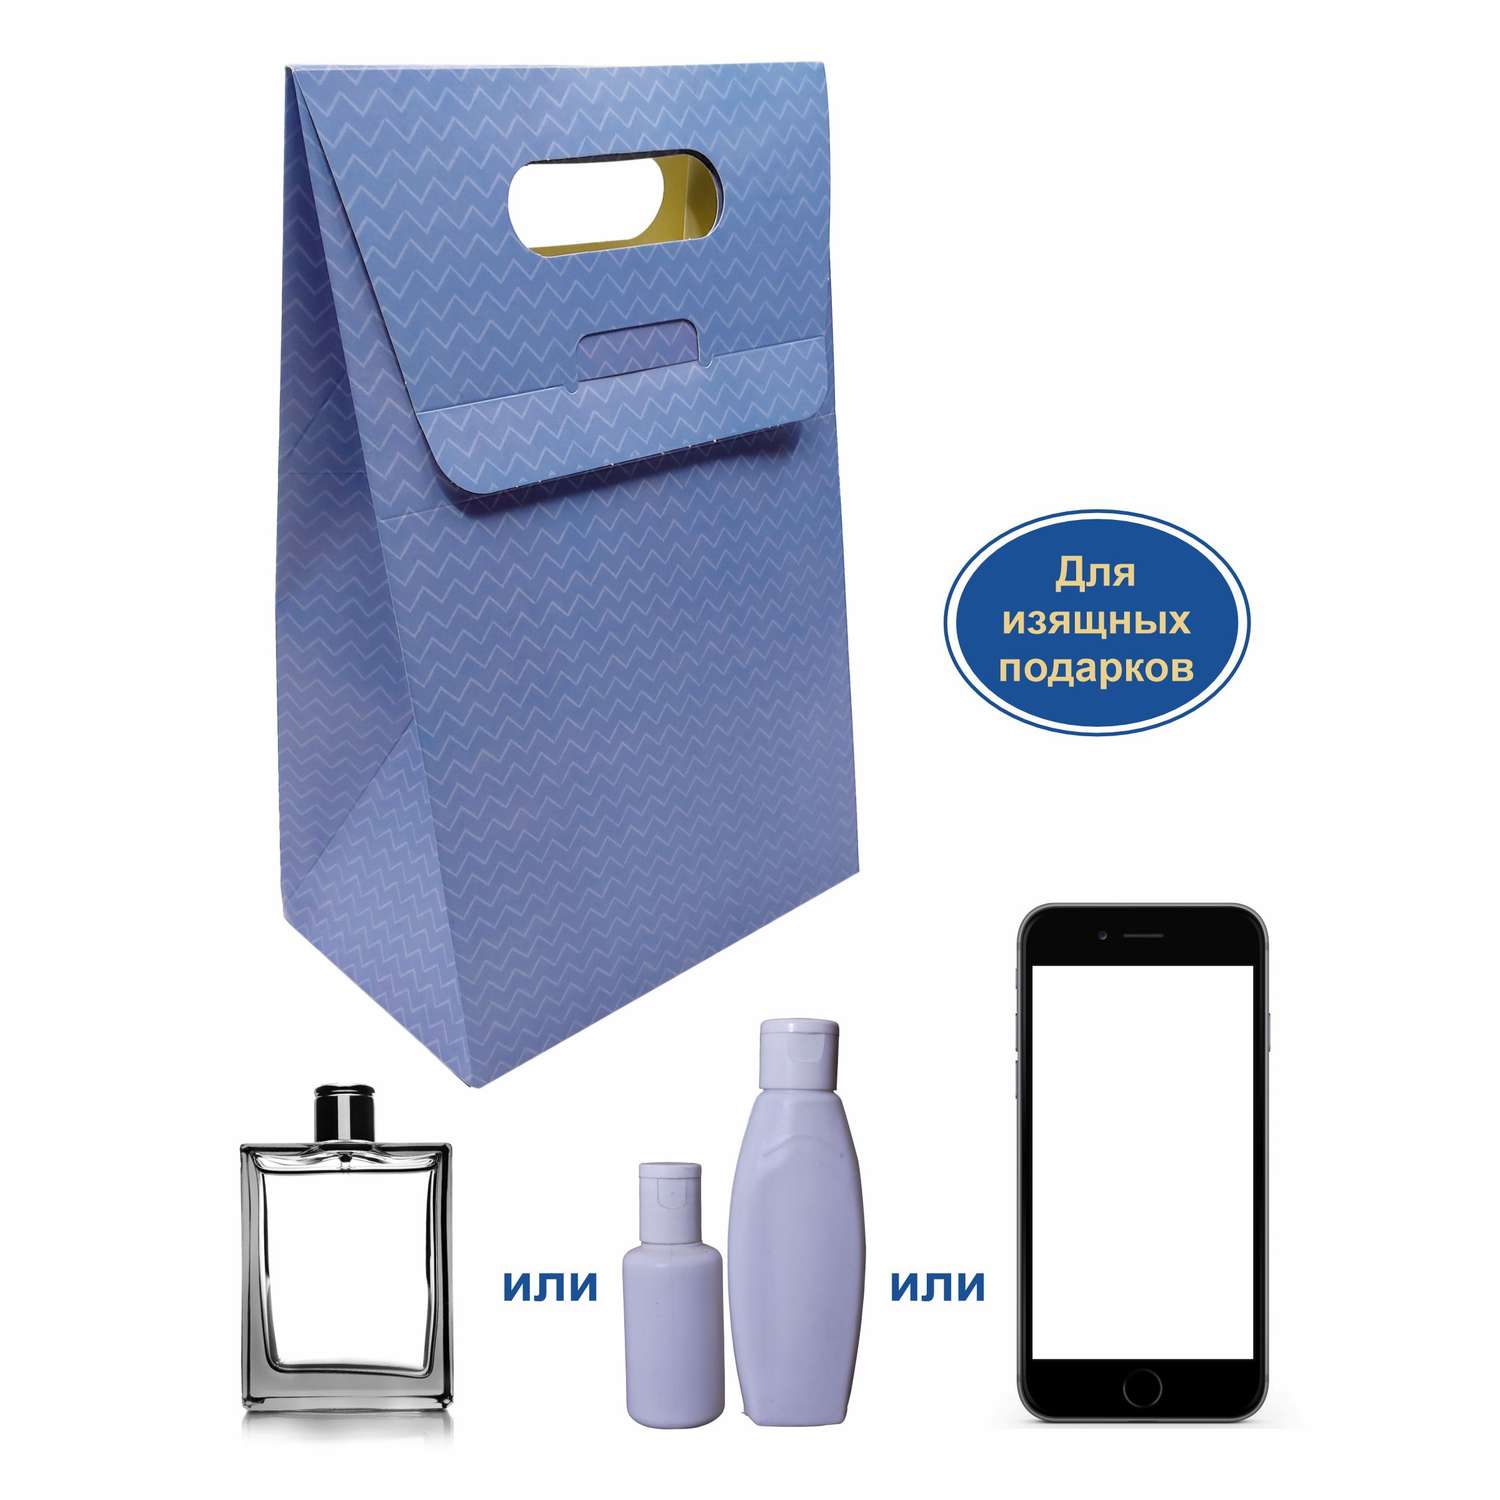 Подарочная коробка BimBiMon голубой зигзаг набор 5 штук - фото 2